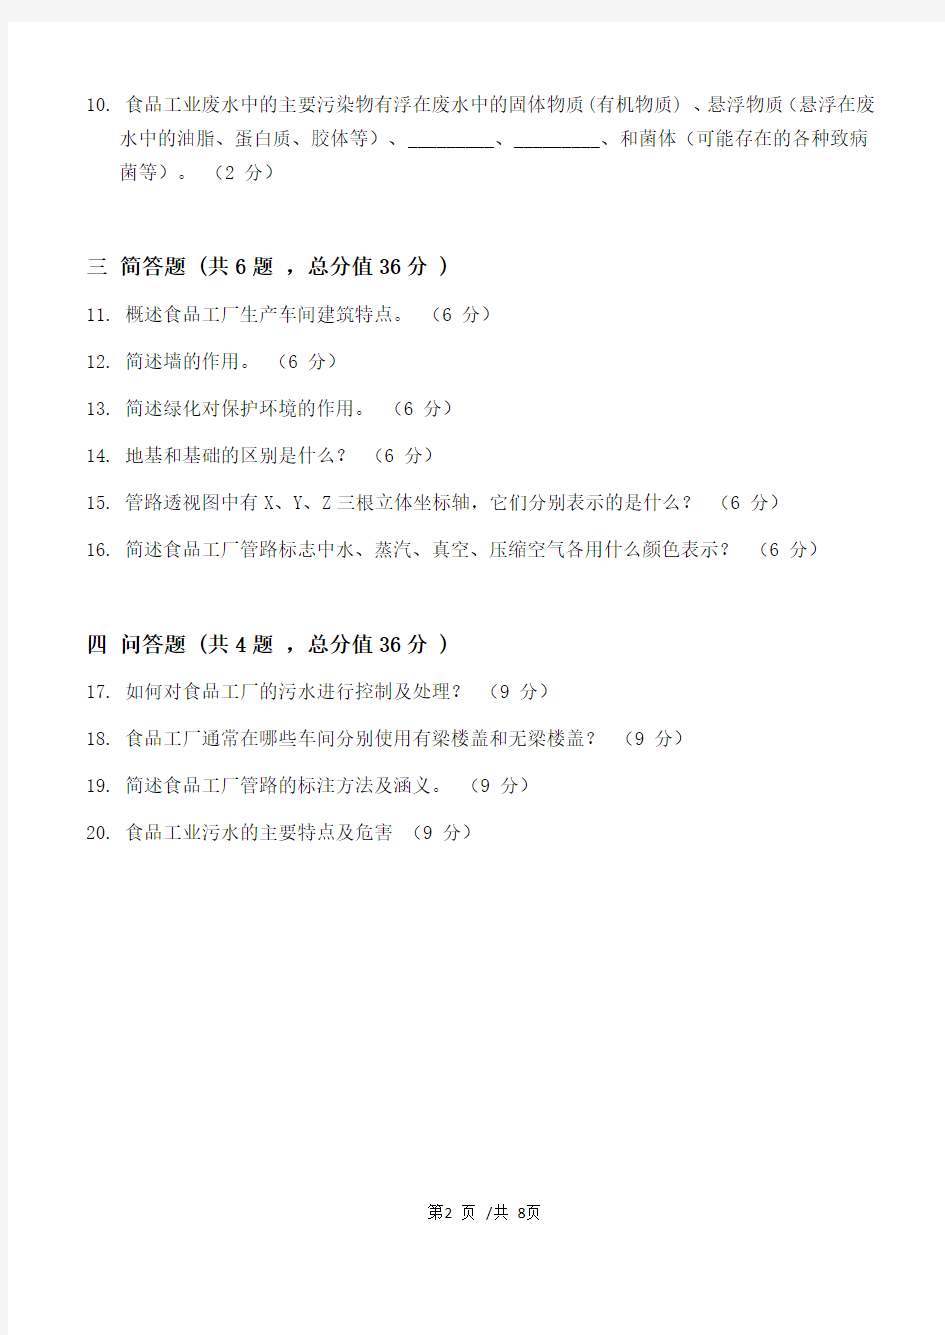 食品工厂设计原理第3阶段江南大学练习题答案  共三个阶段,这是其中一个阶段,答案在最后。